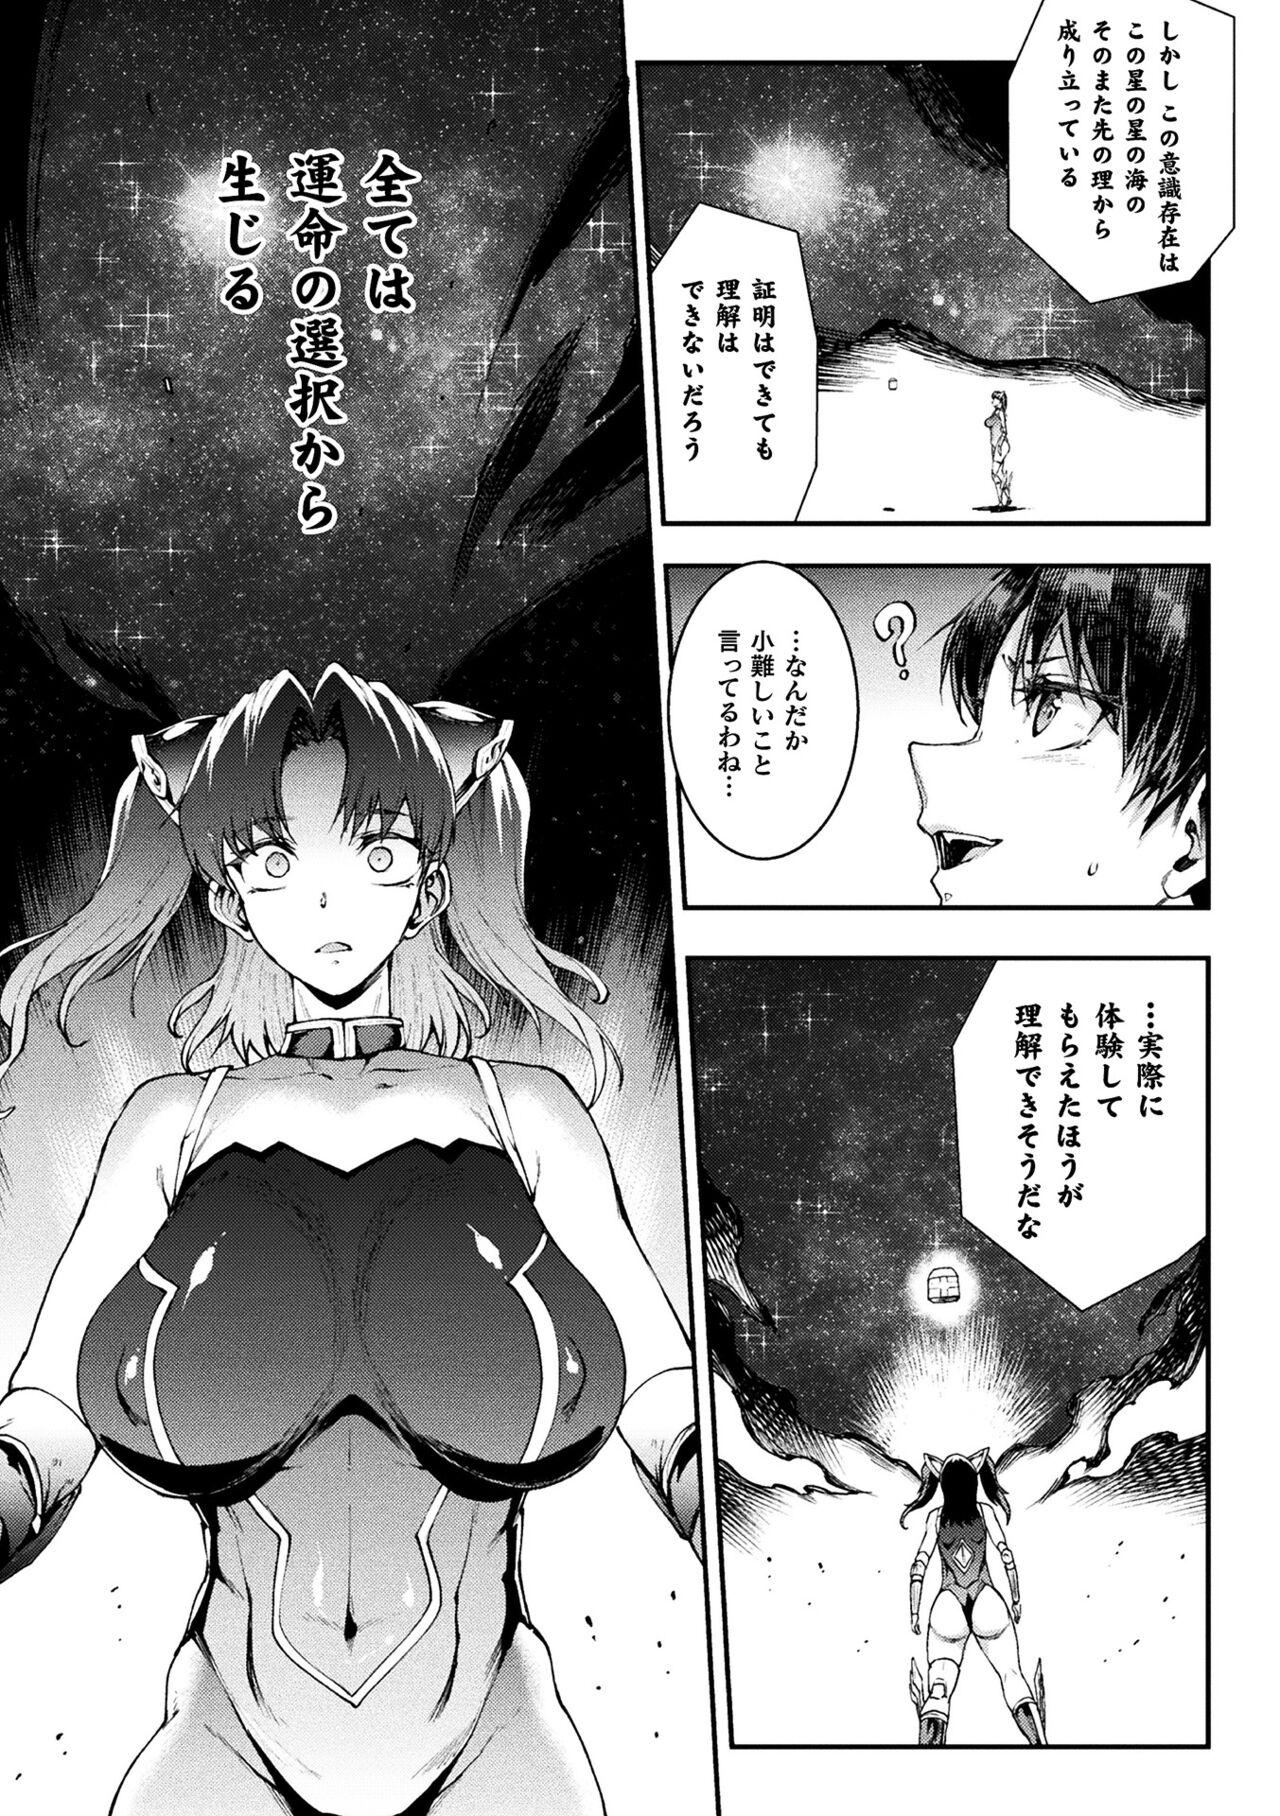 [Erect Sawaru] Raikou Shinki Igis Magia III -PANDRA saga 3rd ignition- 4 [Digital] 236